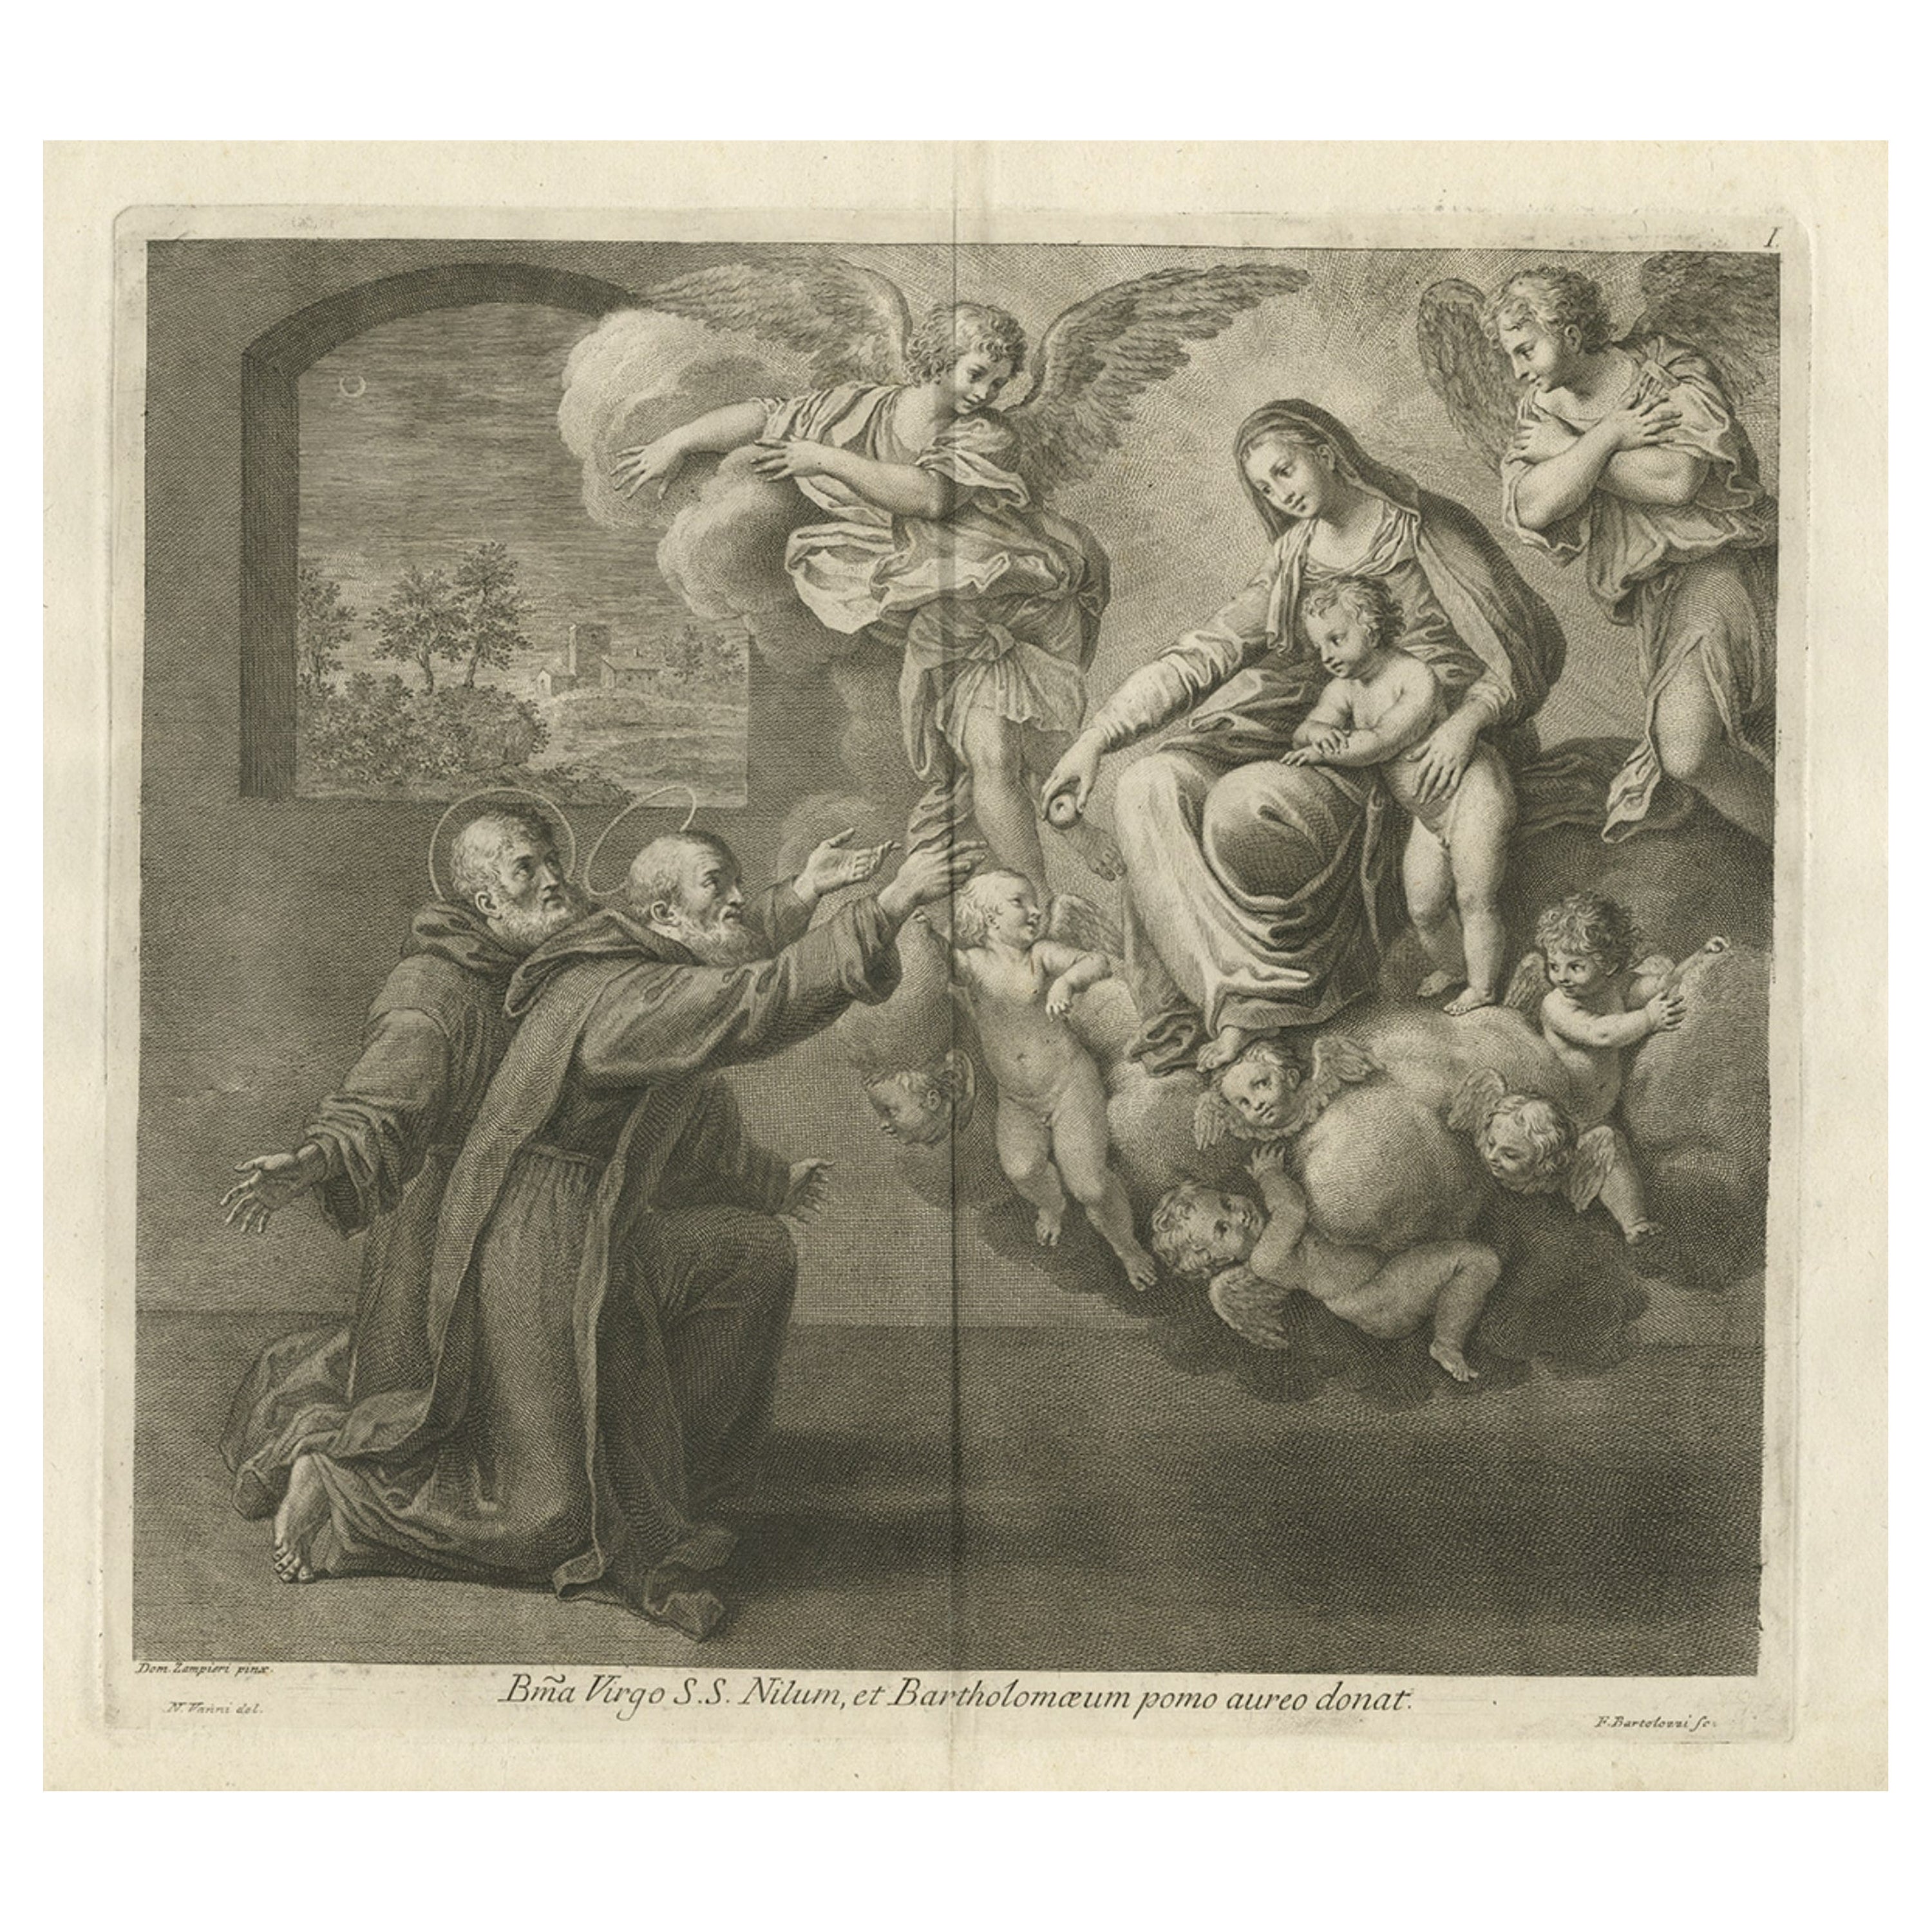 Seltener Teller der Heiligen Nilus und Bartholomew, die zur Heiligen Jungfrau knien, 1762